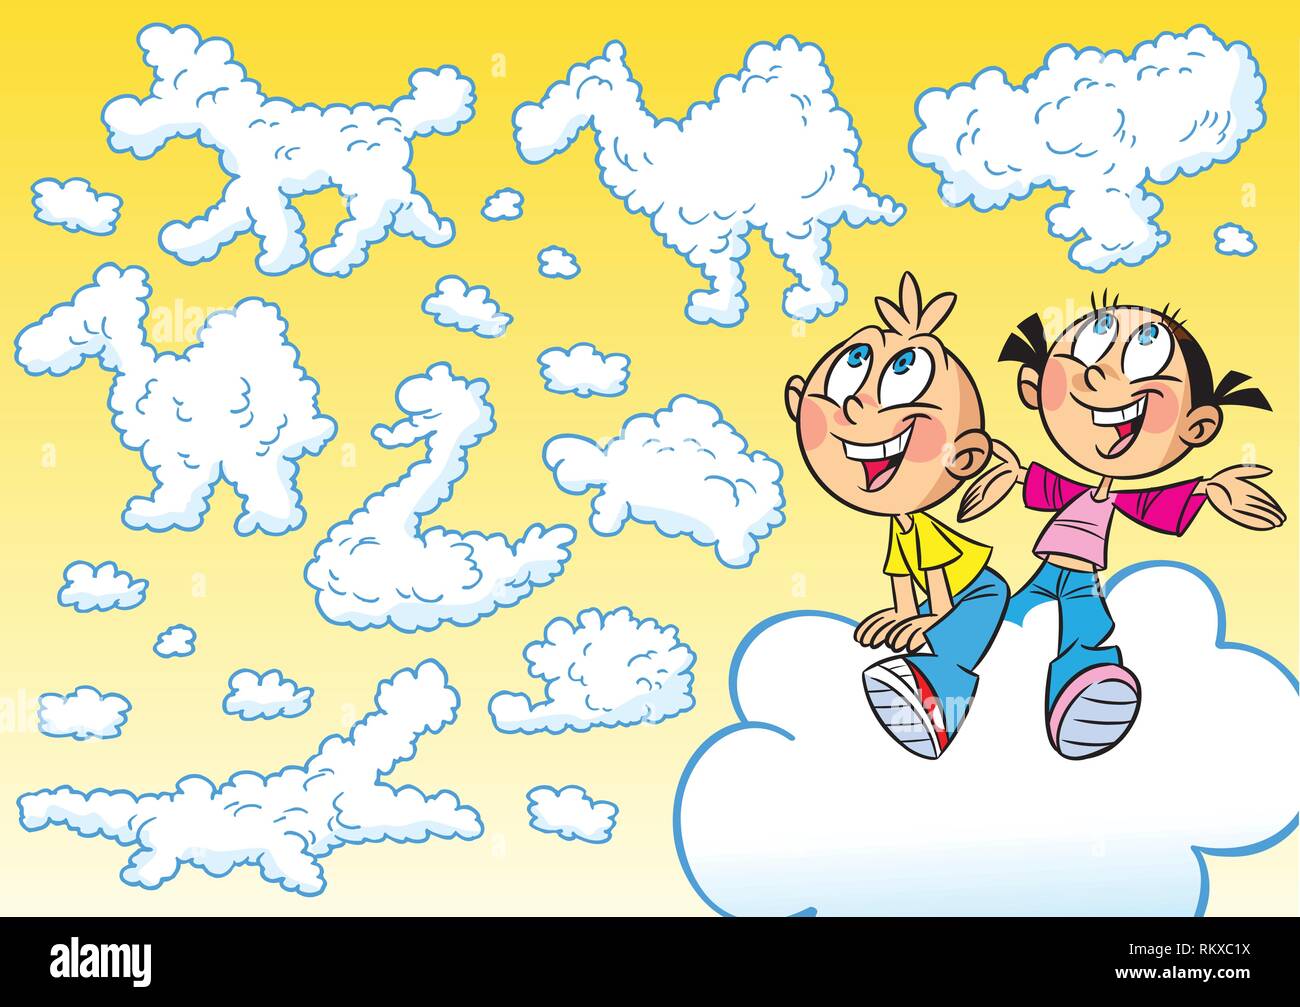 La figura mostra la fantasia dei bambini gioco. Essi volare sulle nuvole, che sono rappresentati nelle immagini di vari animali. Illustrazione Vettoriale